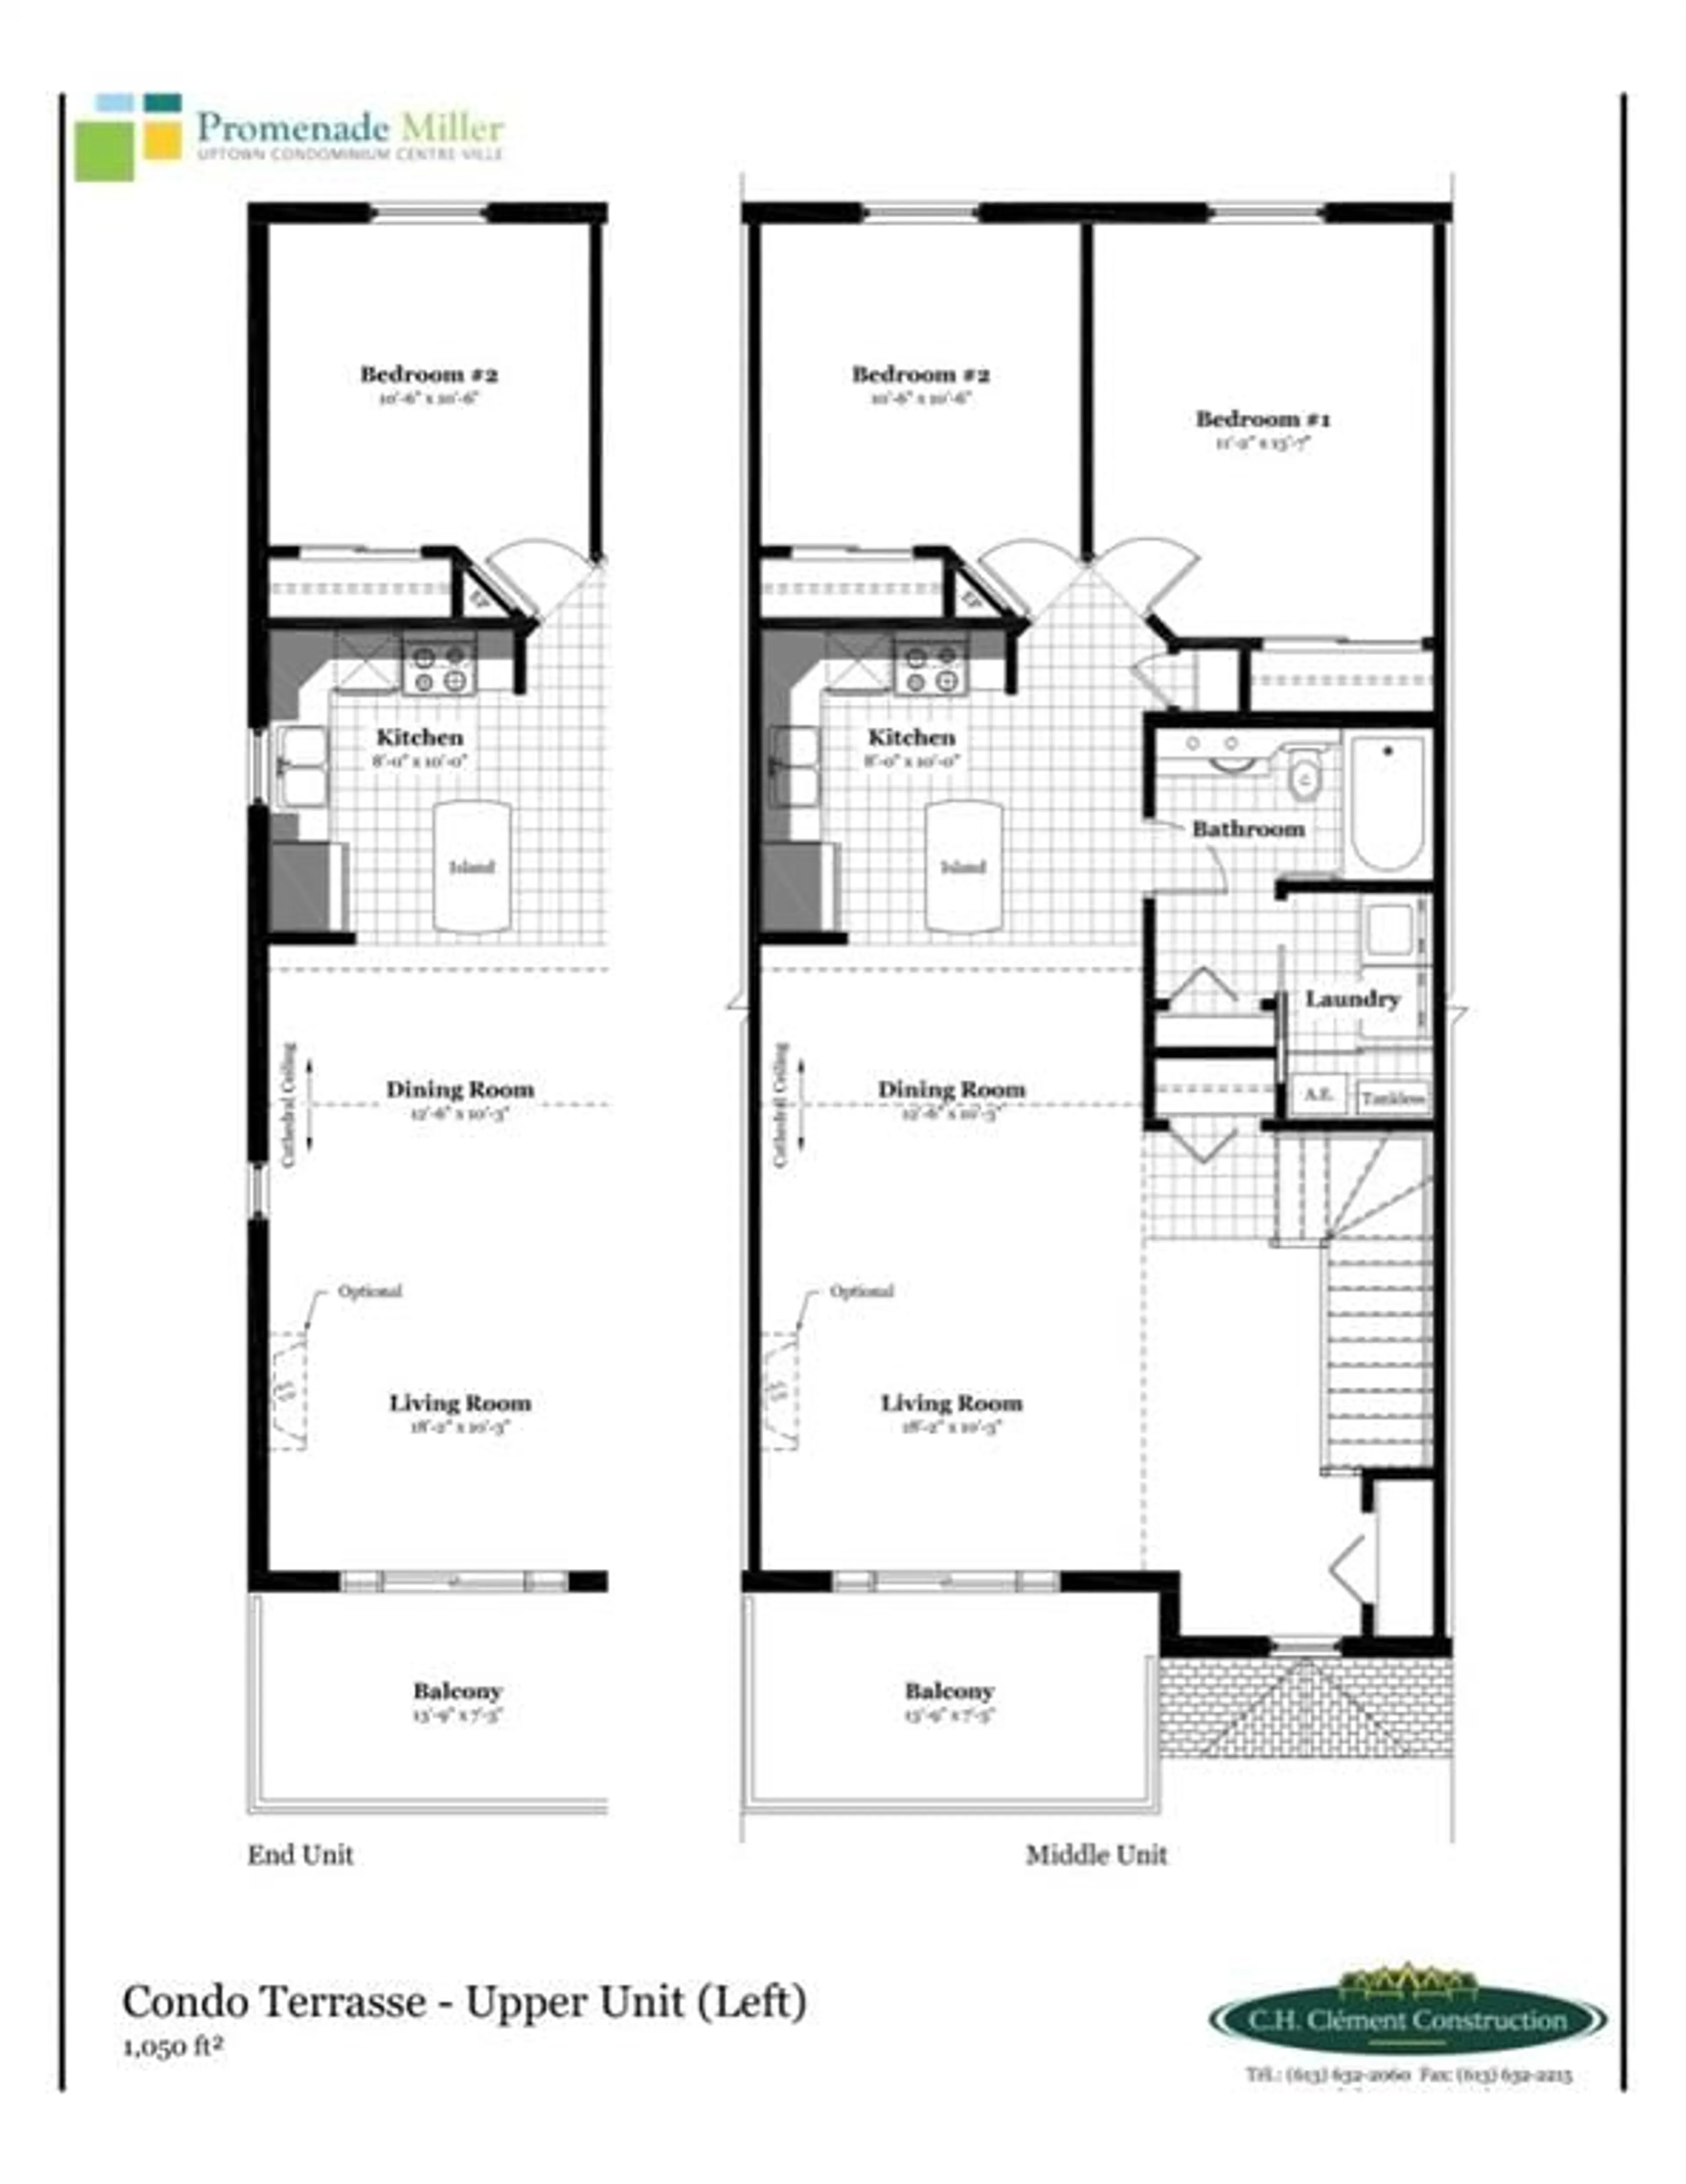 Floor plan for U11-1.0 WATER St, Cornwall Ontario K6H 0G2